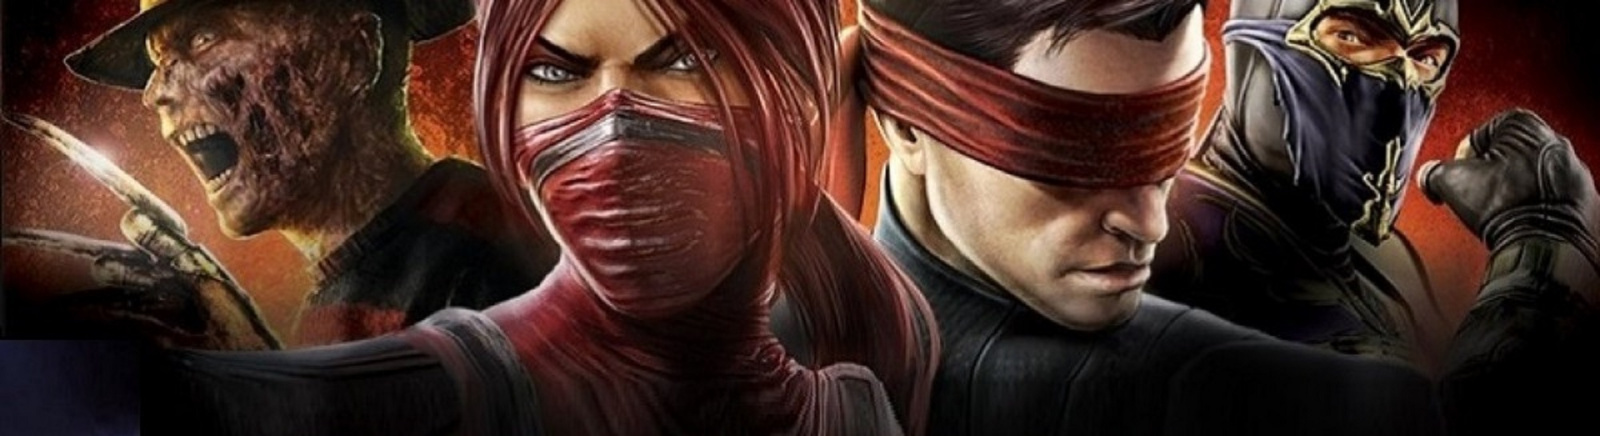 Дата выхода Mortal Kombat Vita  на PS3, Xbox 360 и PS Vita в России и во всем мире